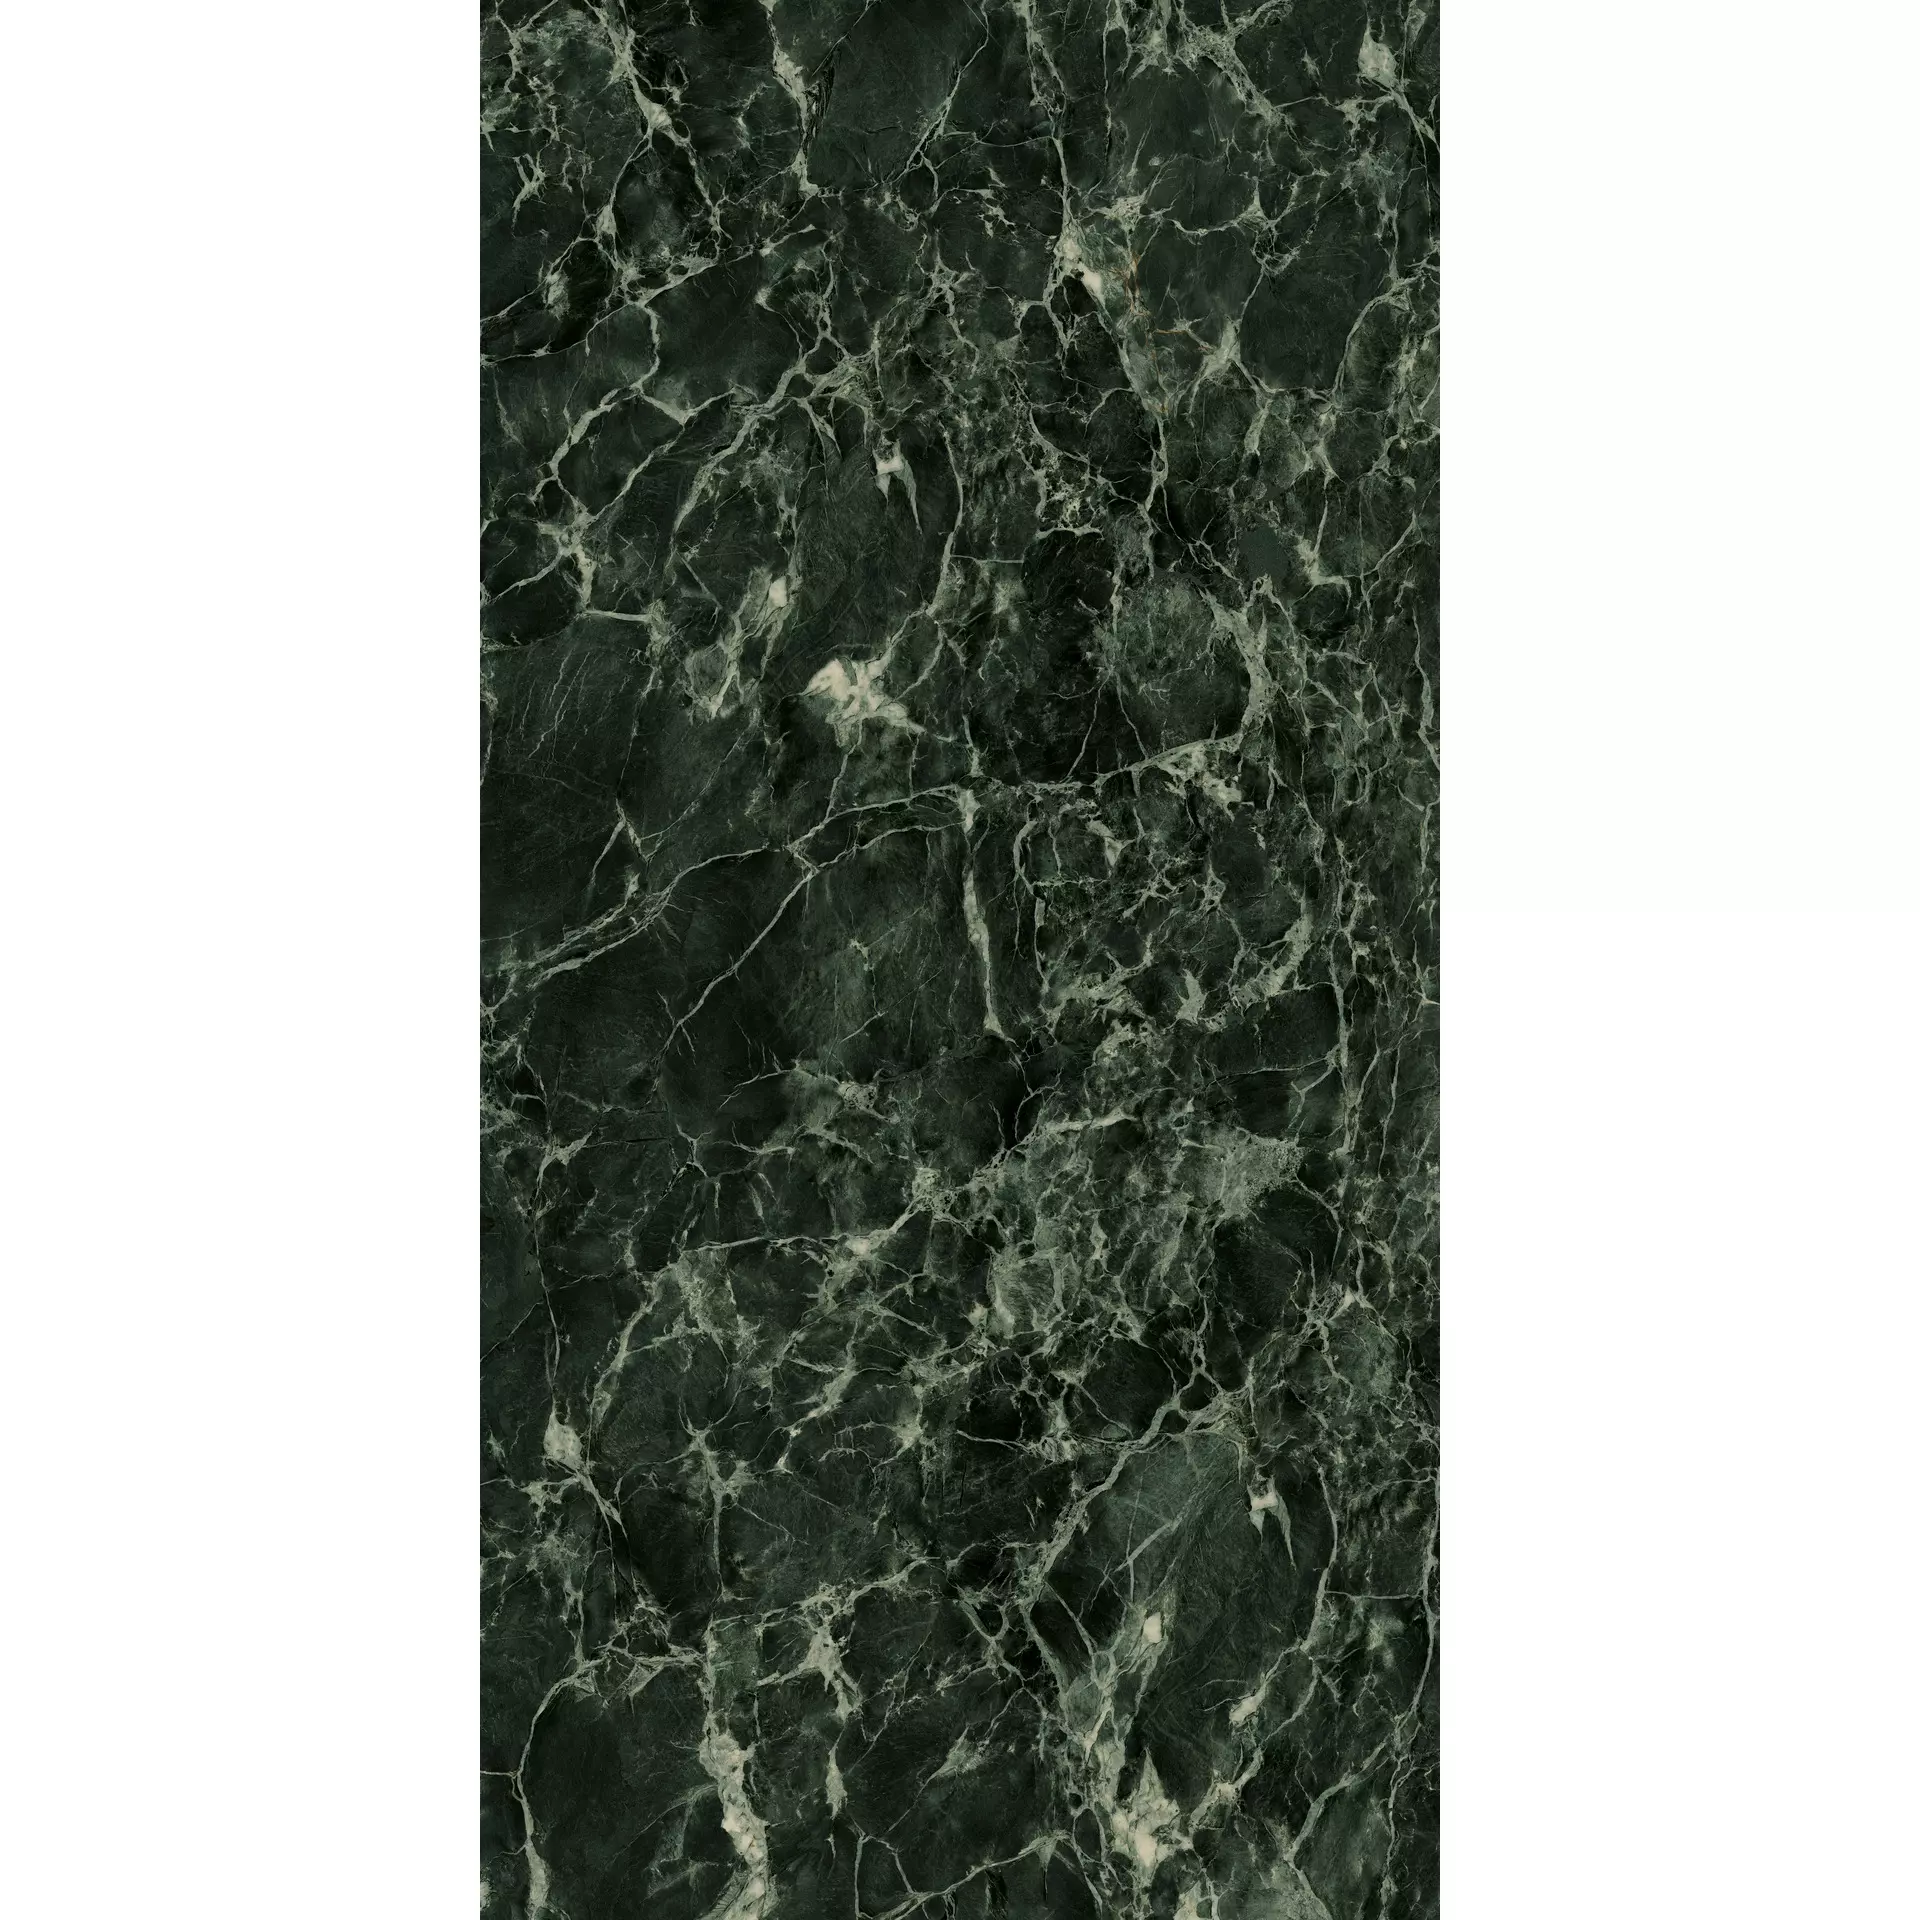 Marazzi Grande Marble Look Verde Aver Satinato stuoiato MC0H 160x320cm rectified 6mm